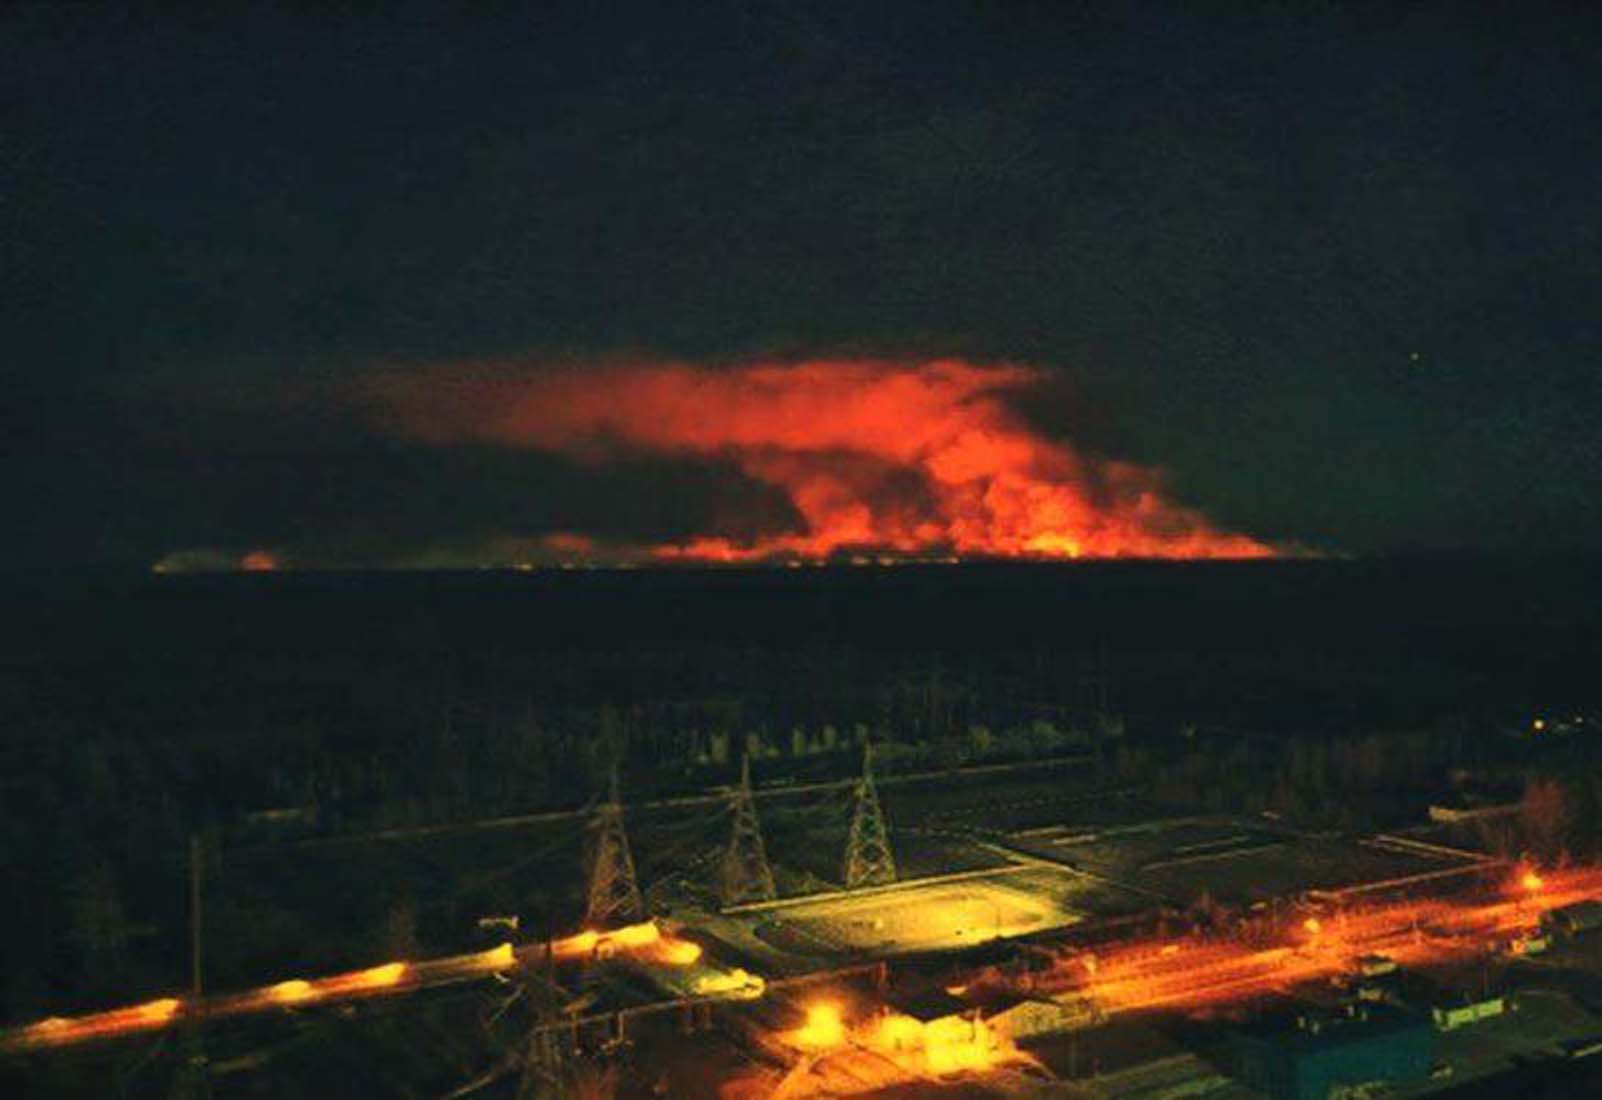 Tüm dünya risk altında! Çernobil'de 31 noktada çıkan yangın radyasyonu arttırıyor! 1986 Çernobil faciası tekrarlanacak mı?